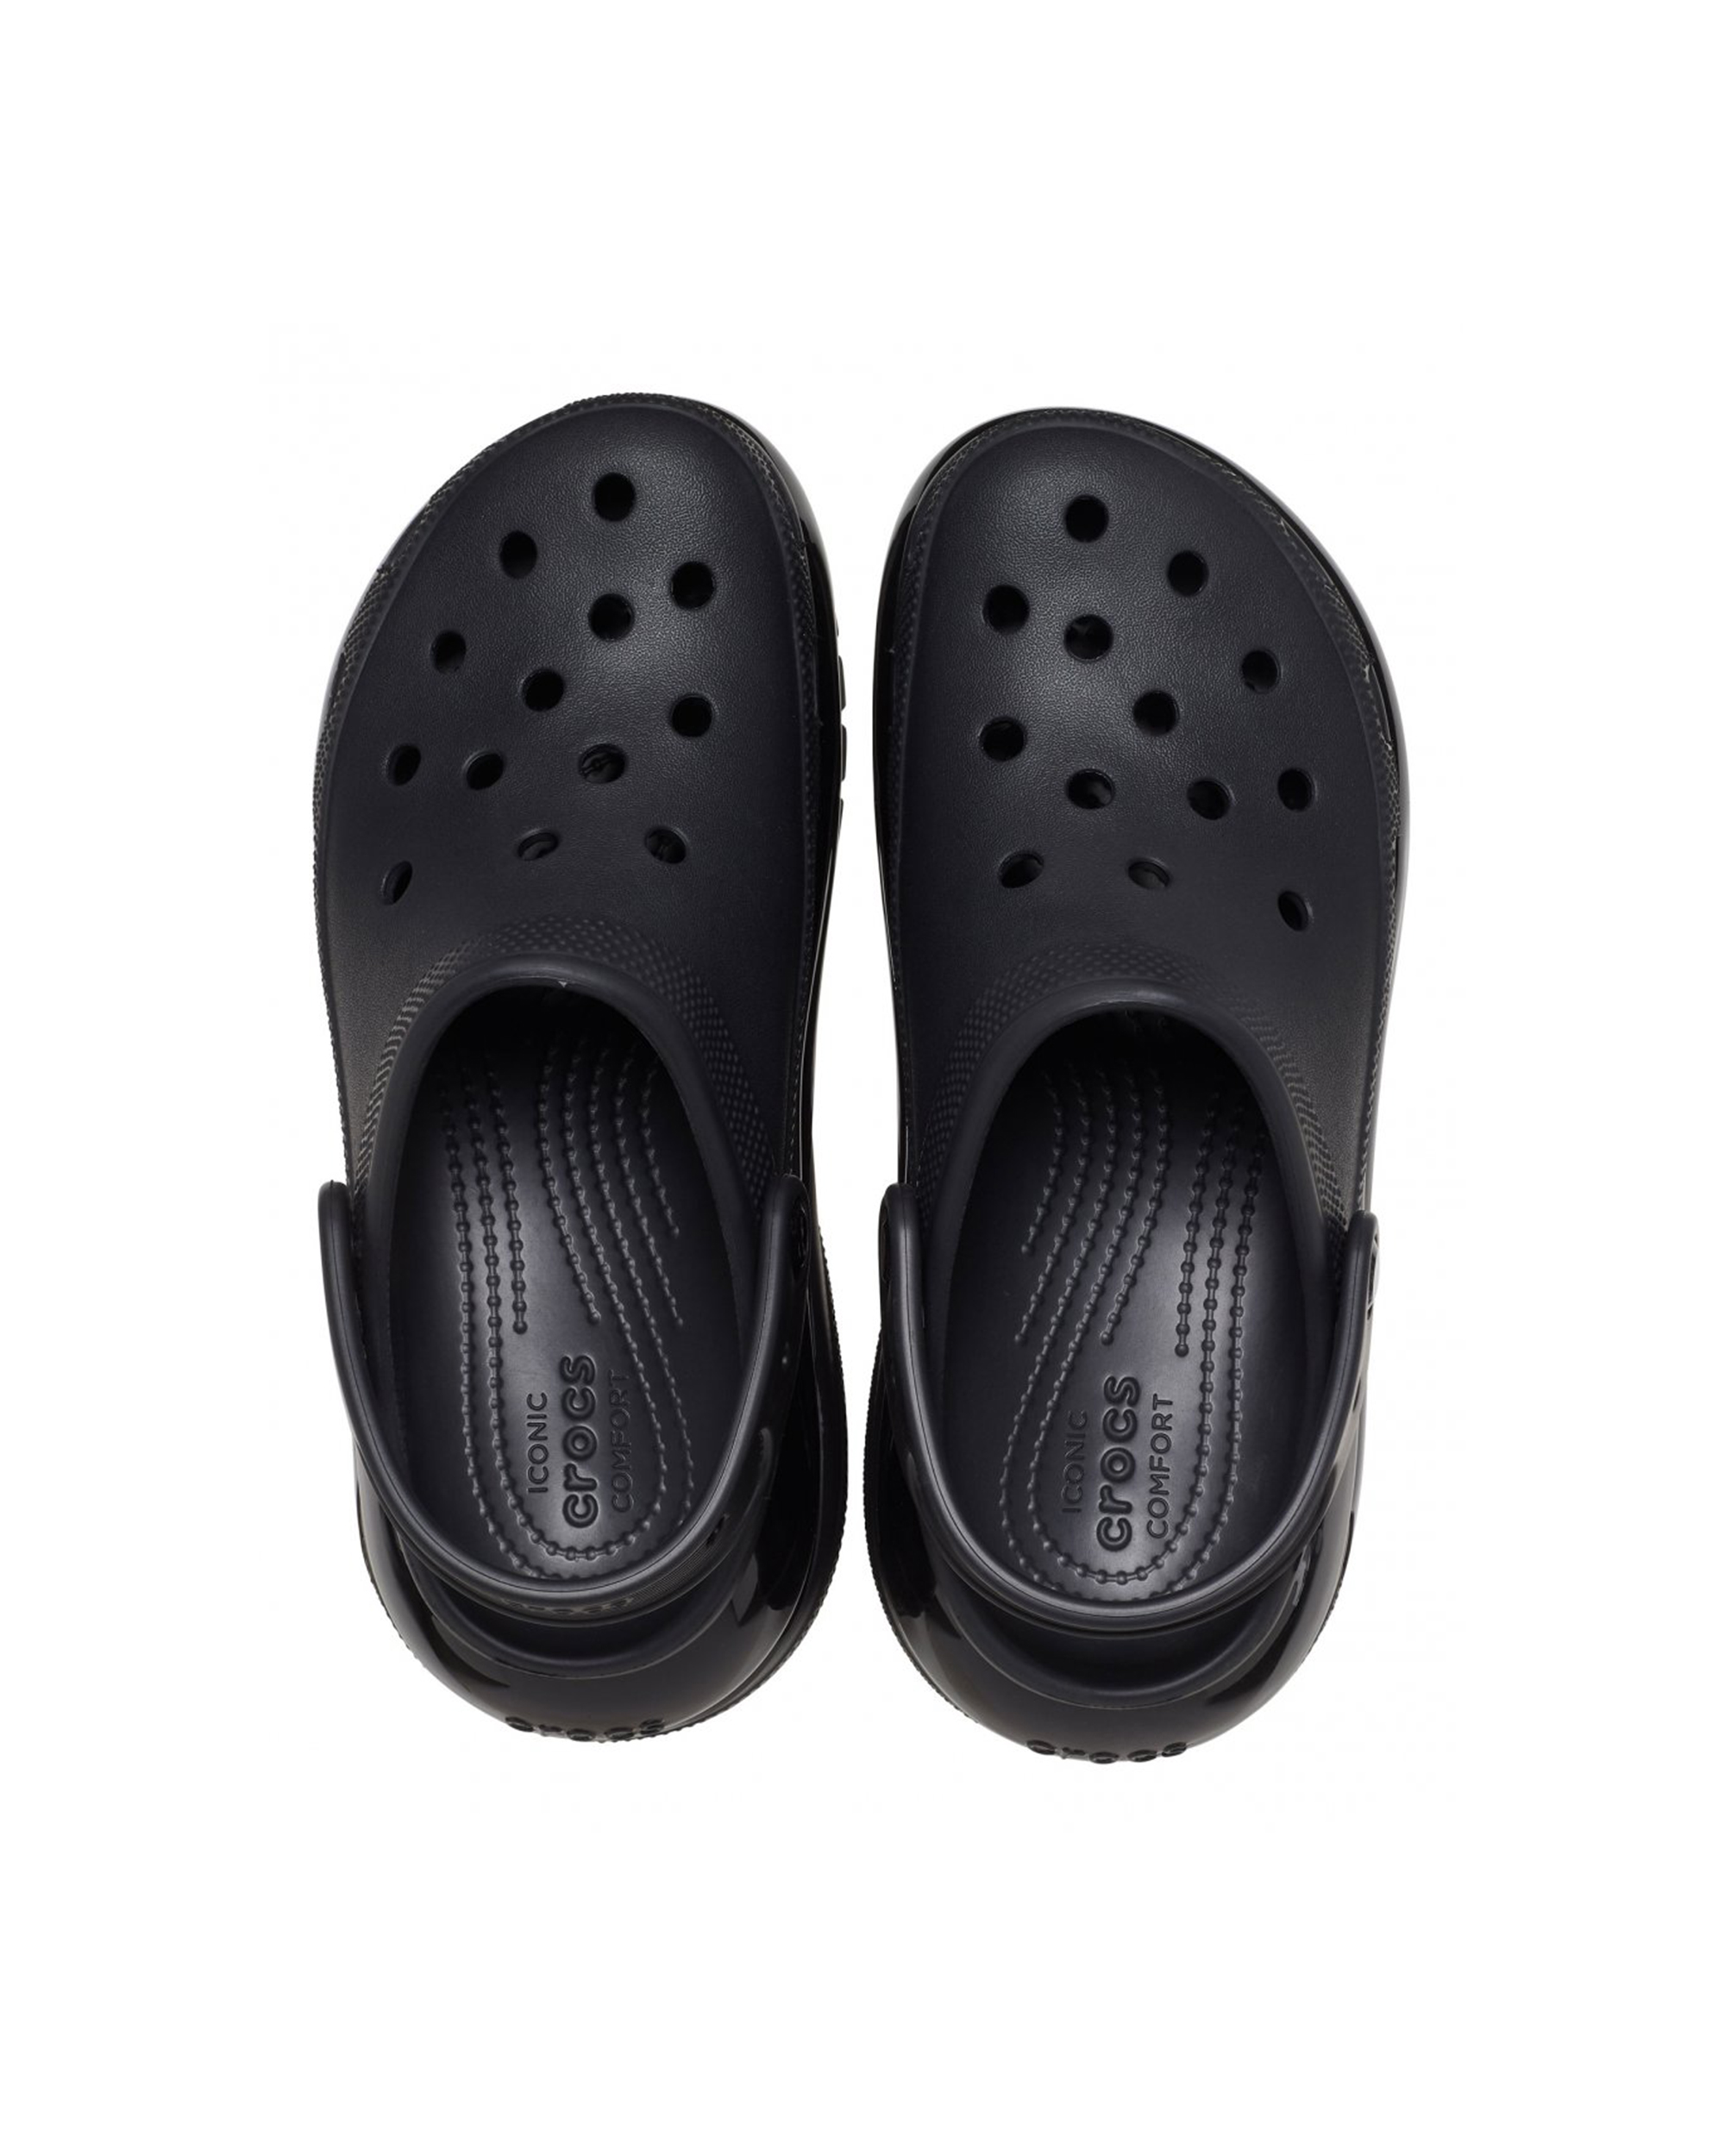 Shop Crocs Mega Crush Clog W Black